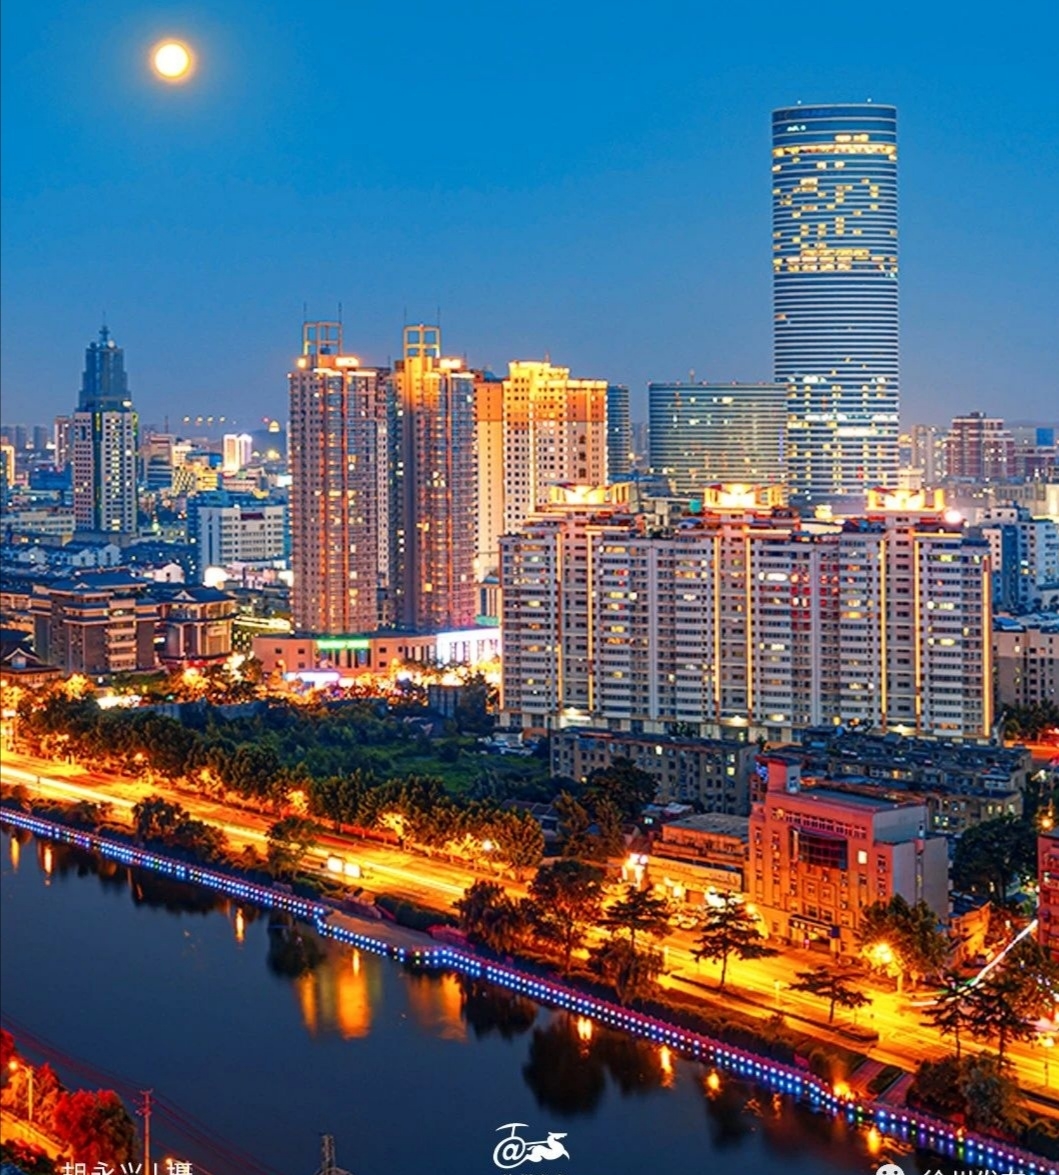 魅力四射的徐州市中心夜景,灯光灿烂!